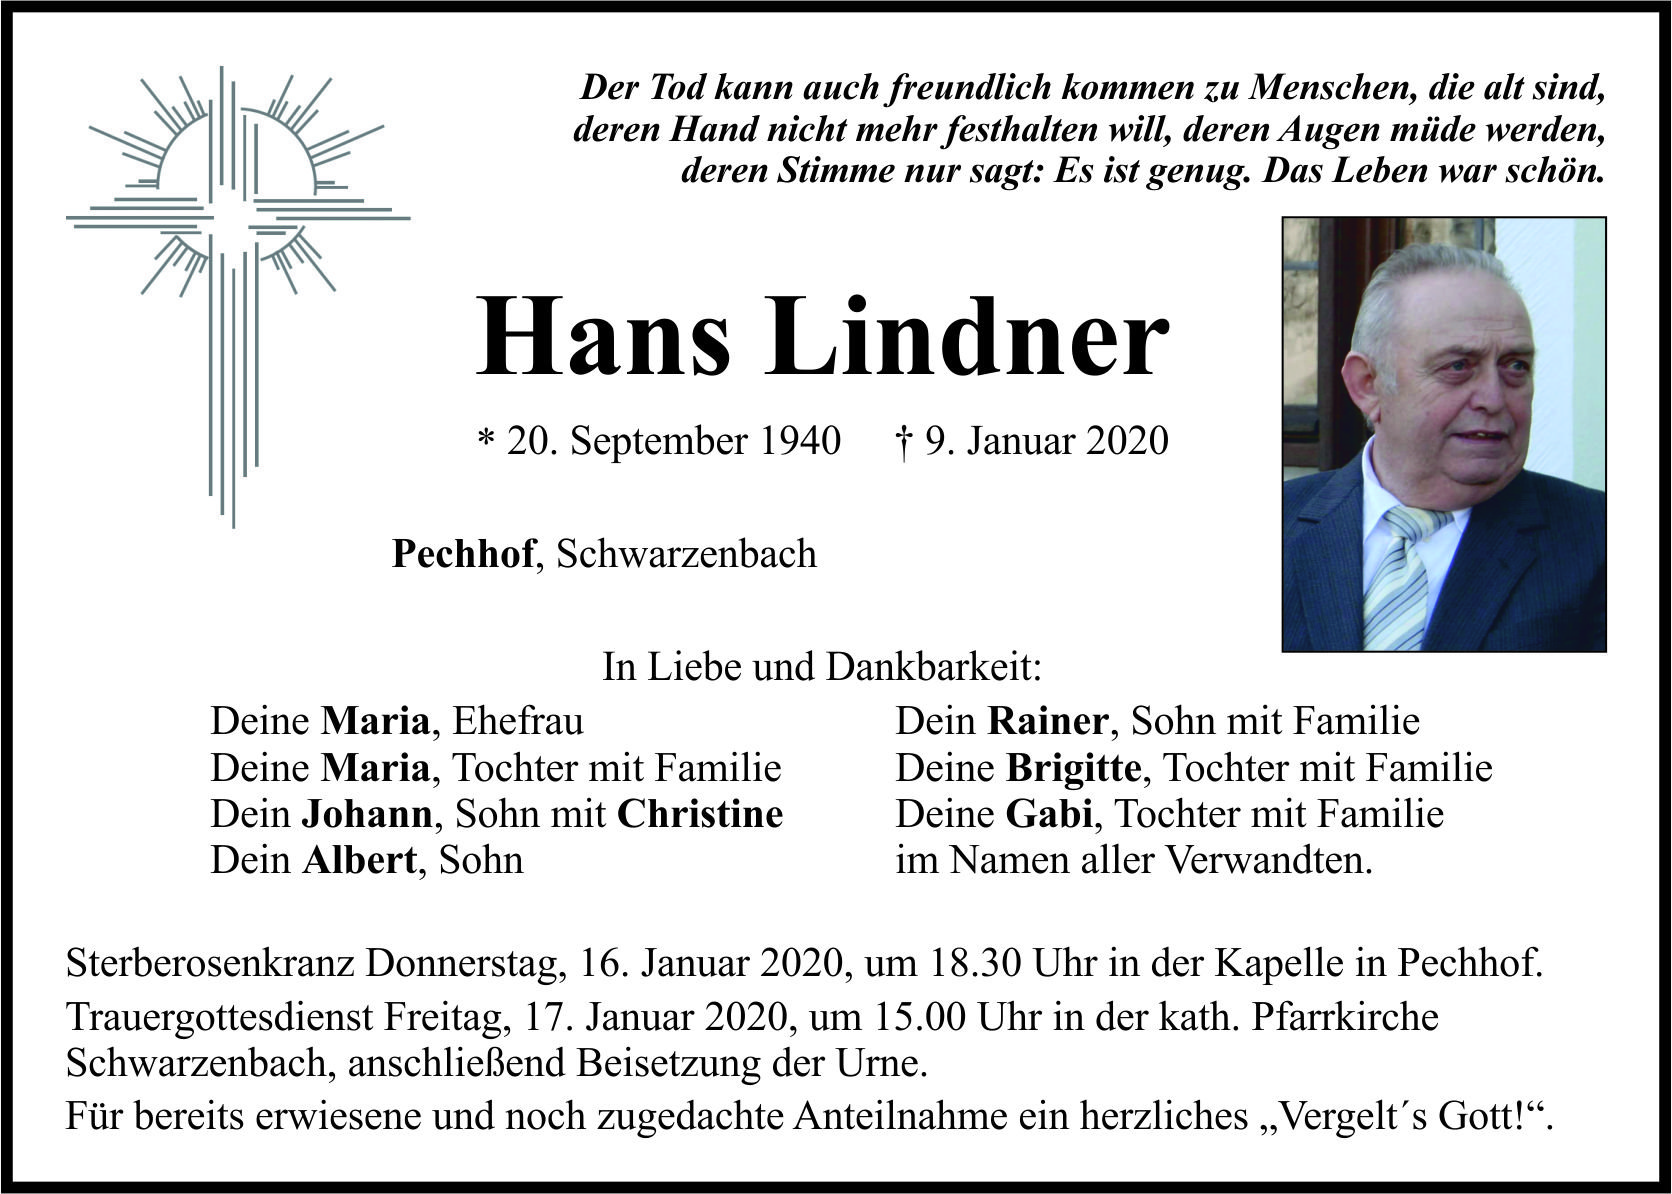 Traueranzeige Hans Lindner, Pechhof